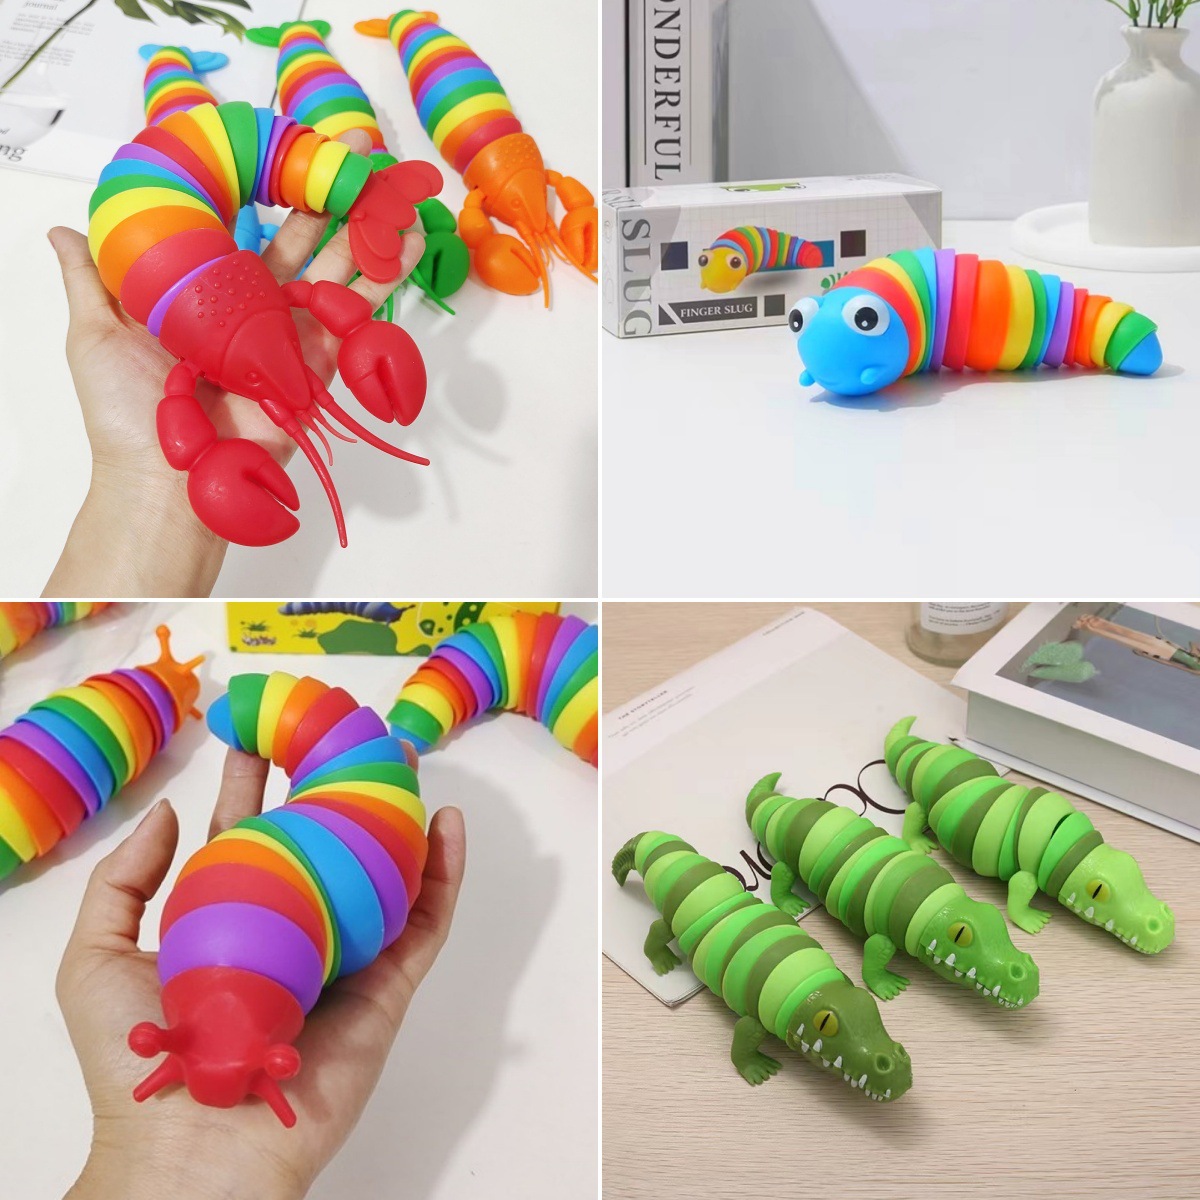 Le même jouet, les escargots colorés, les vers de morve, la simulation de libération de puzzle pour enfants, l'outil de décompression de la chenille tordu